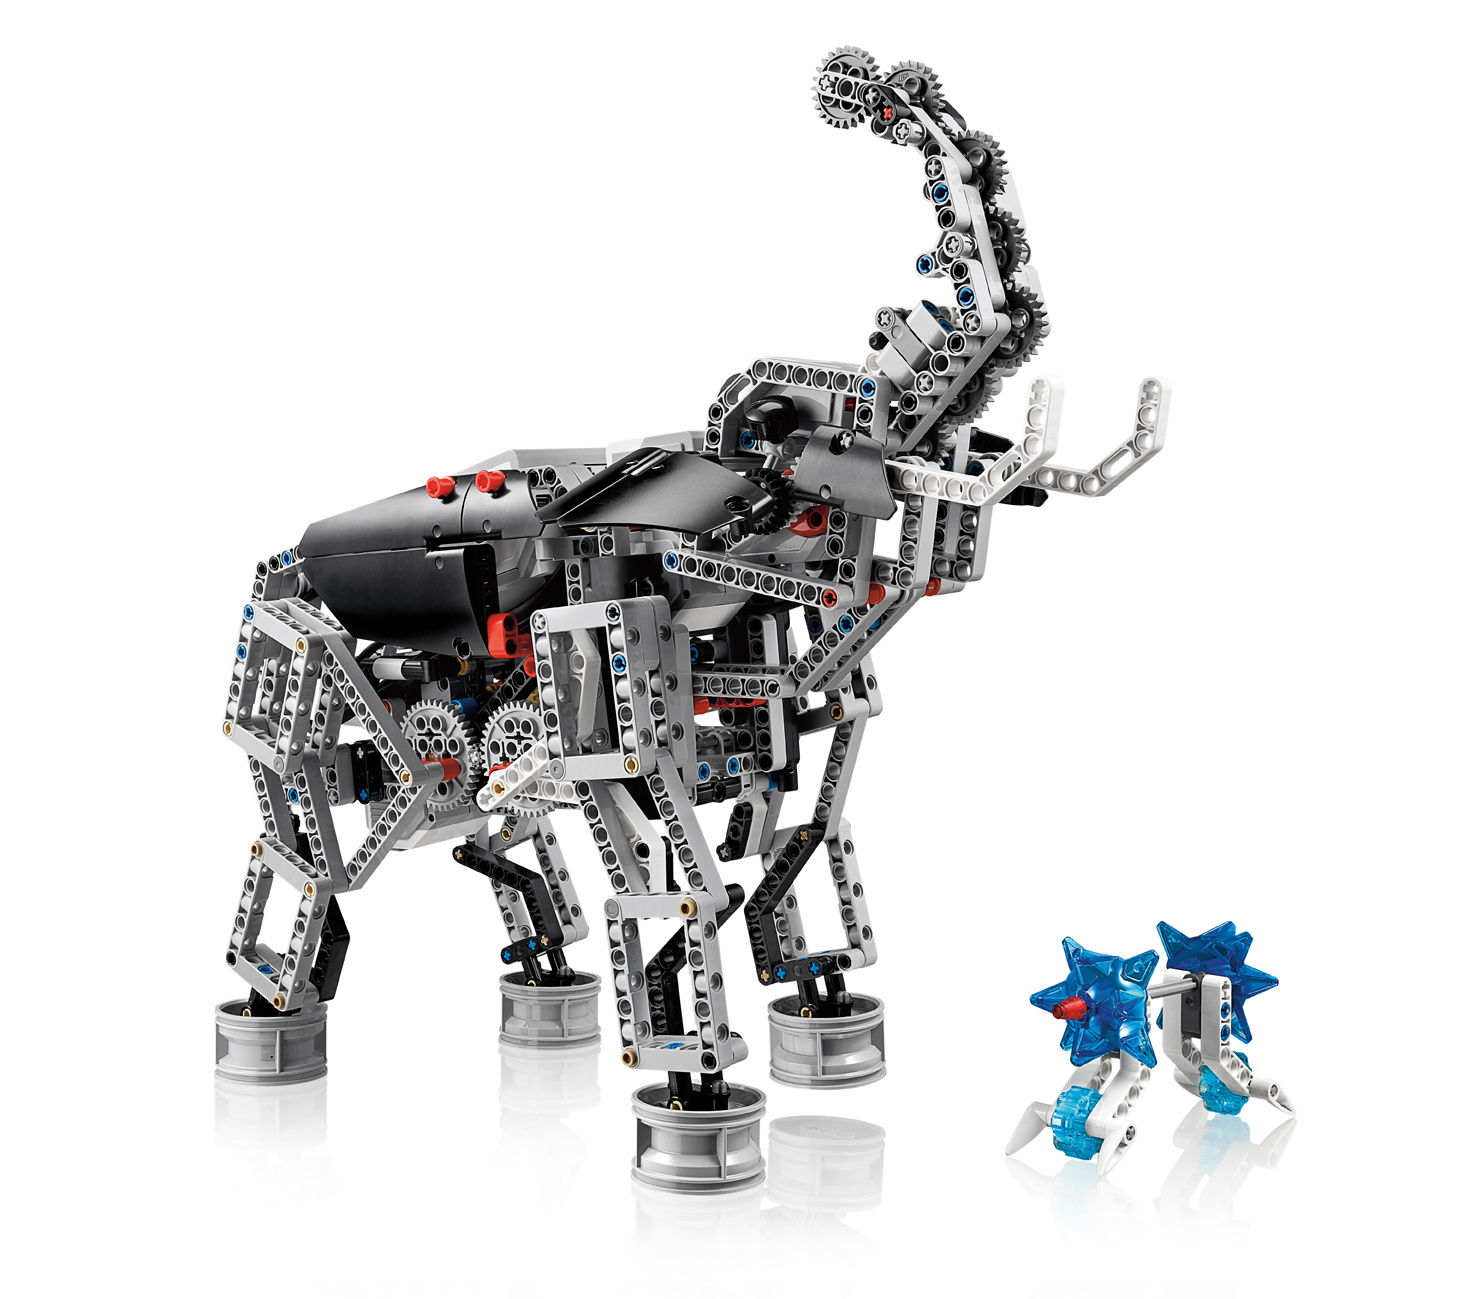 Lego Mindstorms Education Ev3 Download